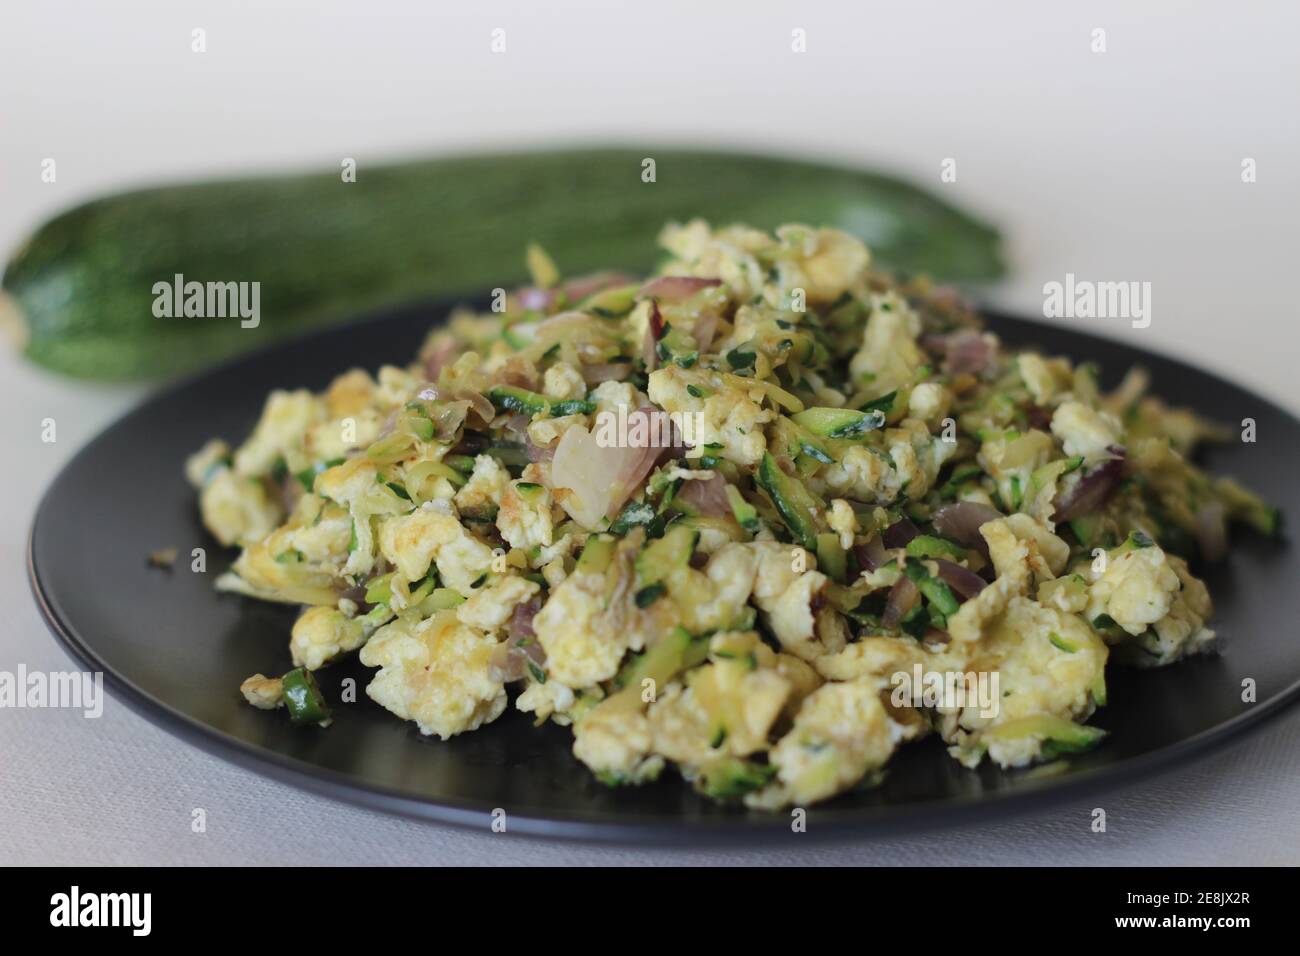 Uova strapazzate con zucchine verdi grattugiate per una sana colazione Foto Stock